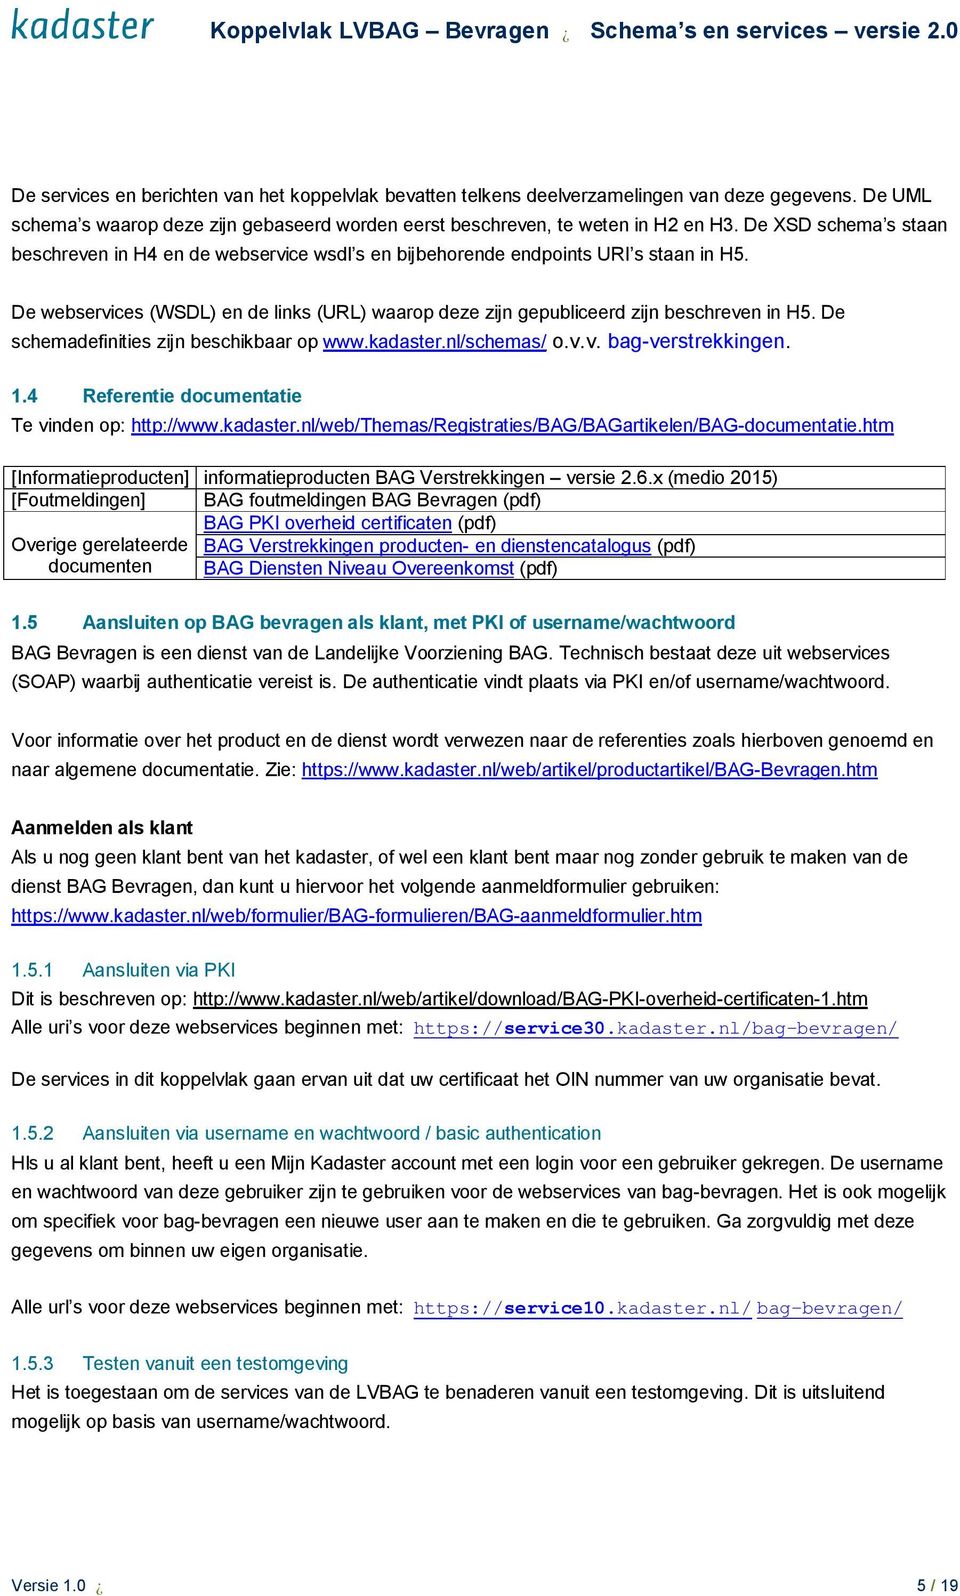 De schemadefinities zijn beschikbaar op www.kadaster.nl/schemas/ o.v.v. bag-verstrekkingen. 1.4 Referentie documentatie Te vinden op: http://www.kadaster.nl/web/themas/registraties/bag/bagartikelen/bag-documentatie.